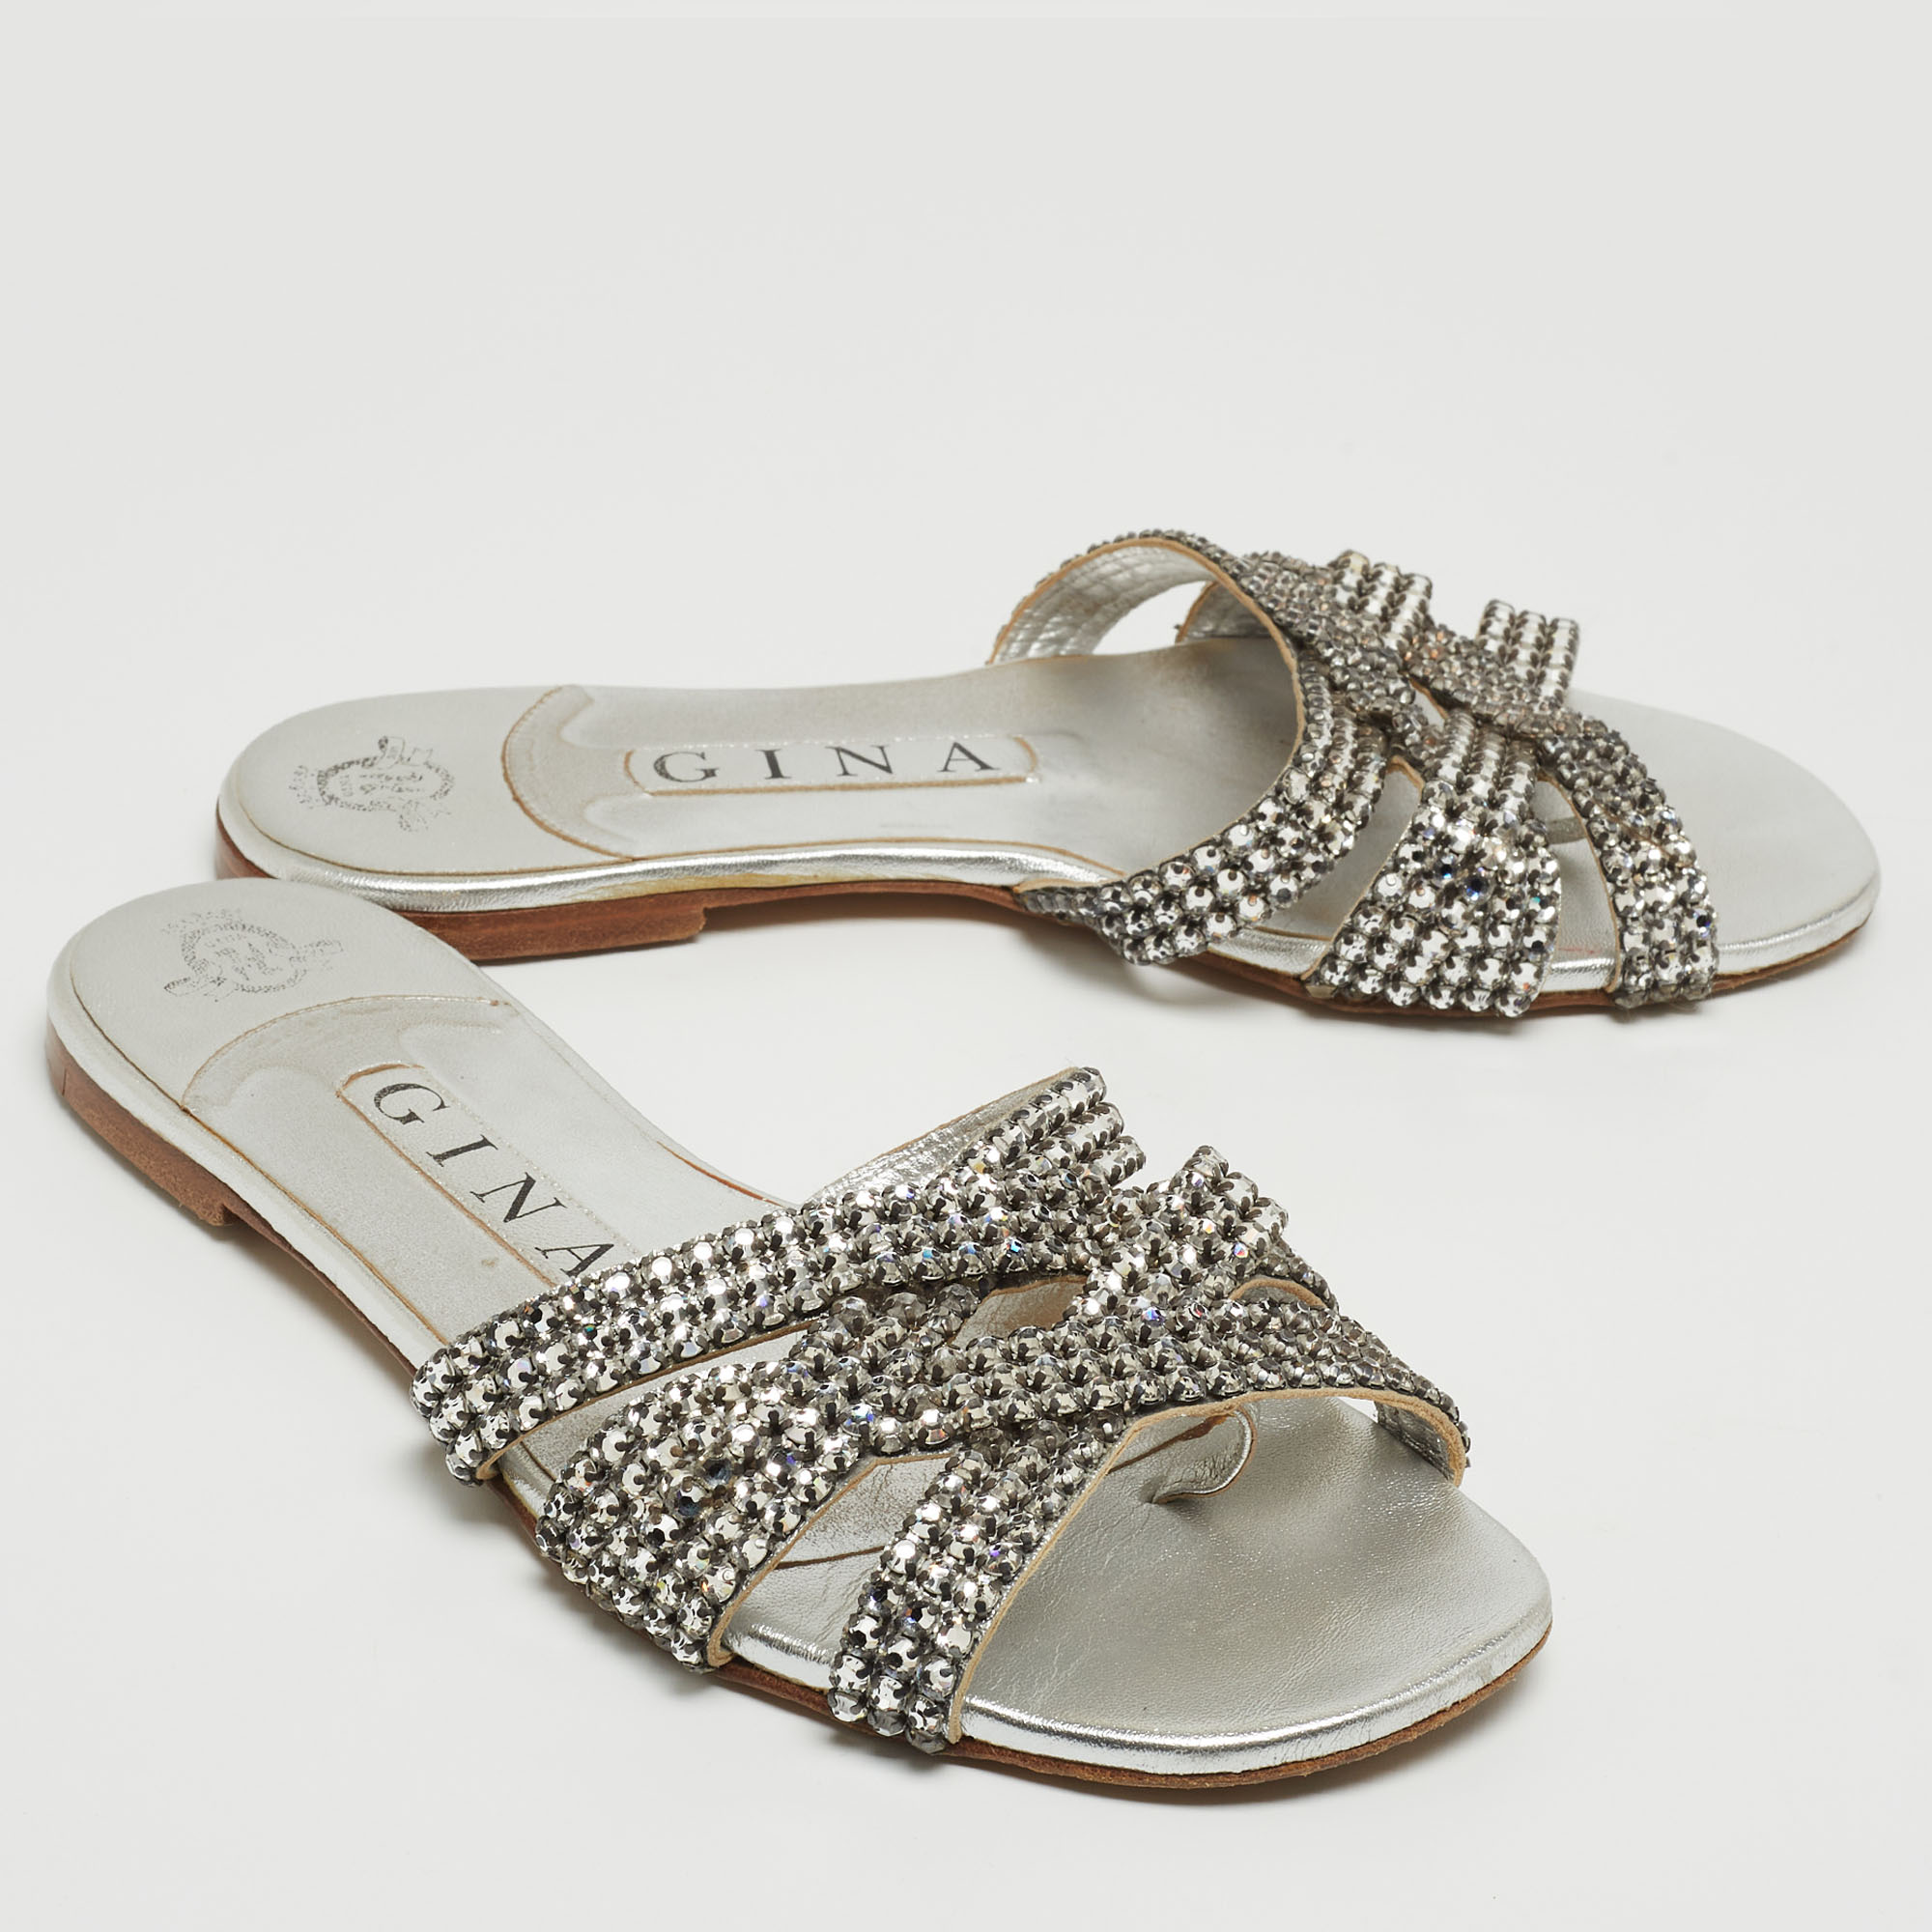 Gina Silver Crystal Embellished Leather Flat Slides Size 36.5